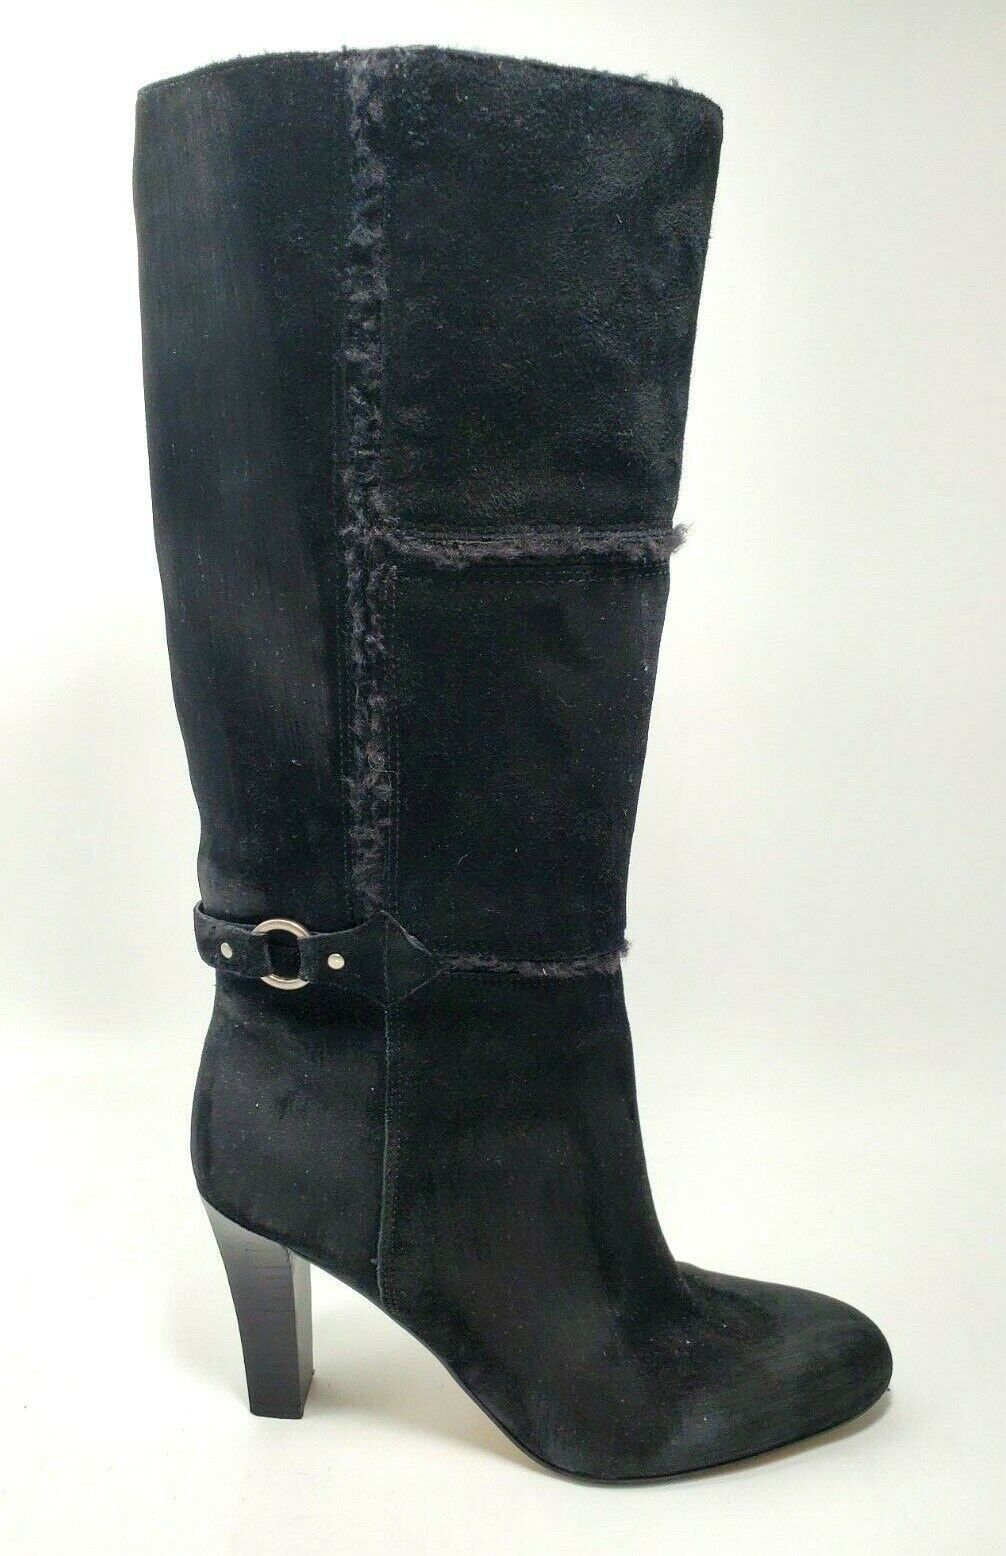 Primary image for Nine West Insider Black Suede Shoes Size US 5.5 M Block Heel Soft Fleece Inner